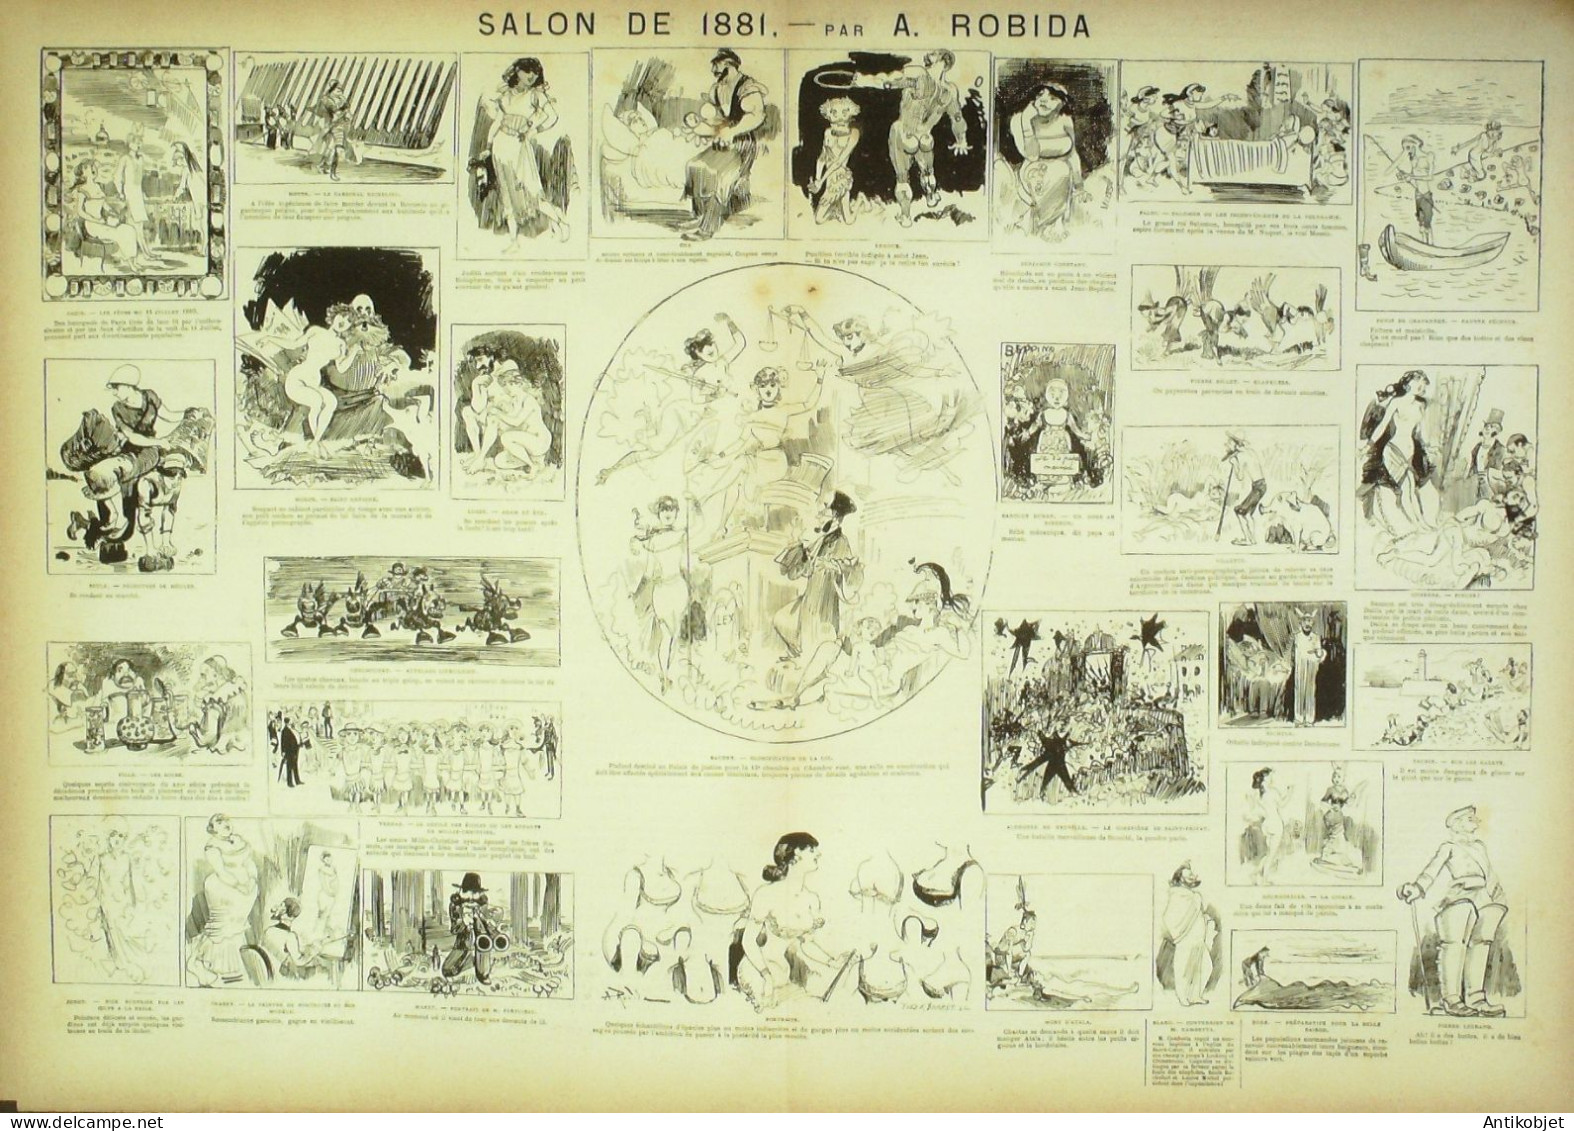 La Caricature 1881 N°  74 Conseil De Révision Dortoir  Robida Cartomancie Loys - Zeitschriften - Vor 1900